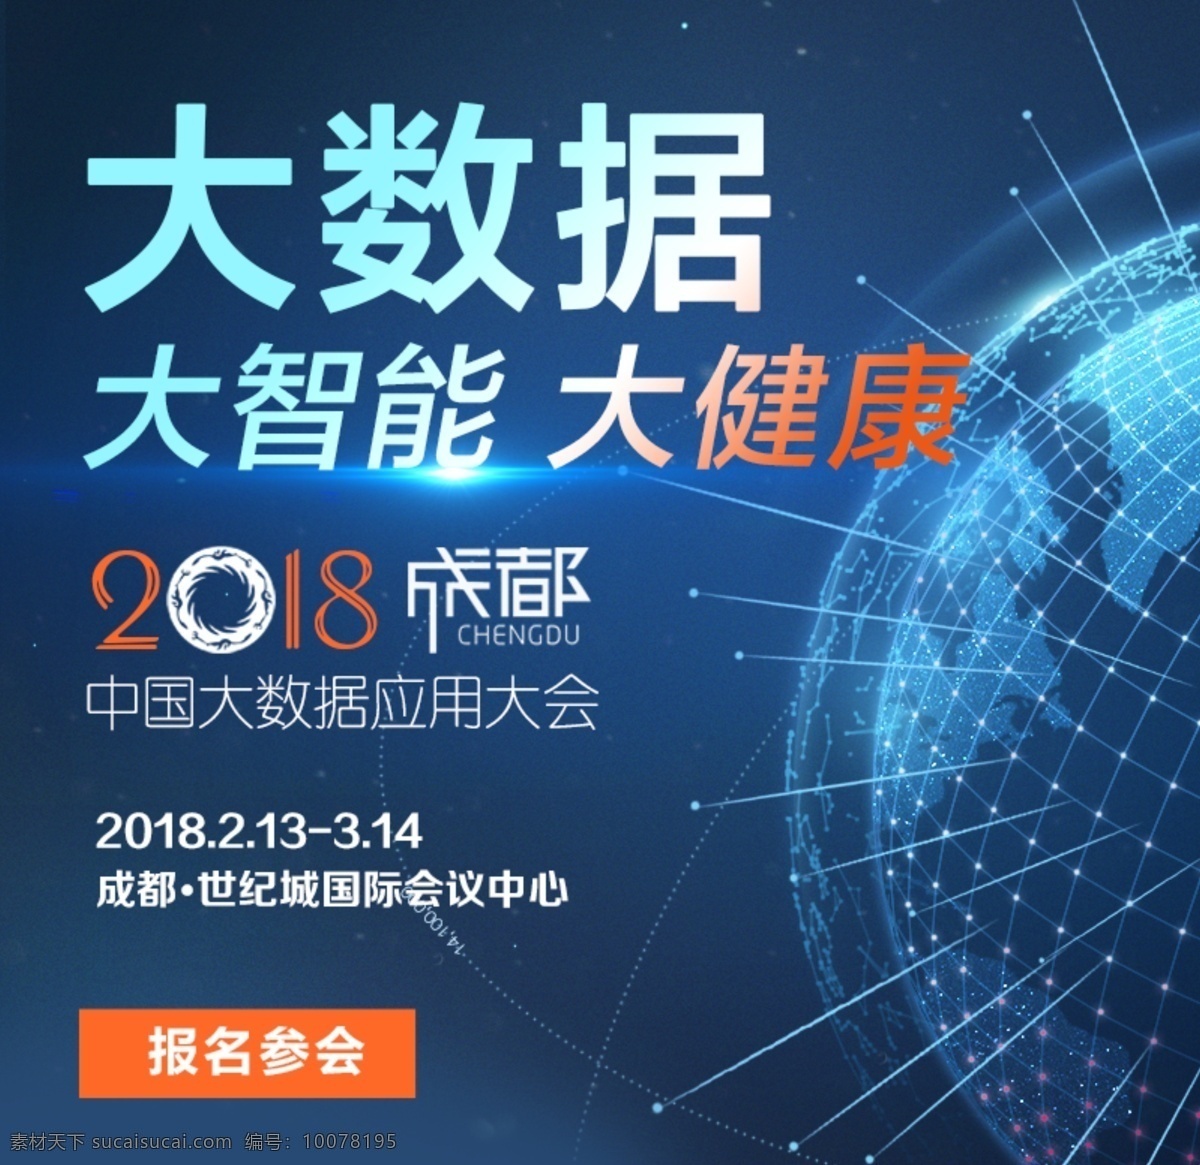 大数据 大智能 大健康 中国应用大会 2019 蓝色背景 光 科技 现代科技 报名参会 报名参加